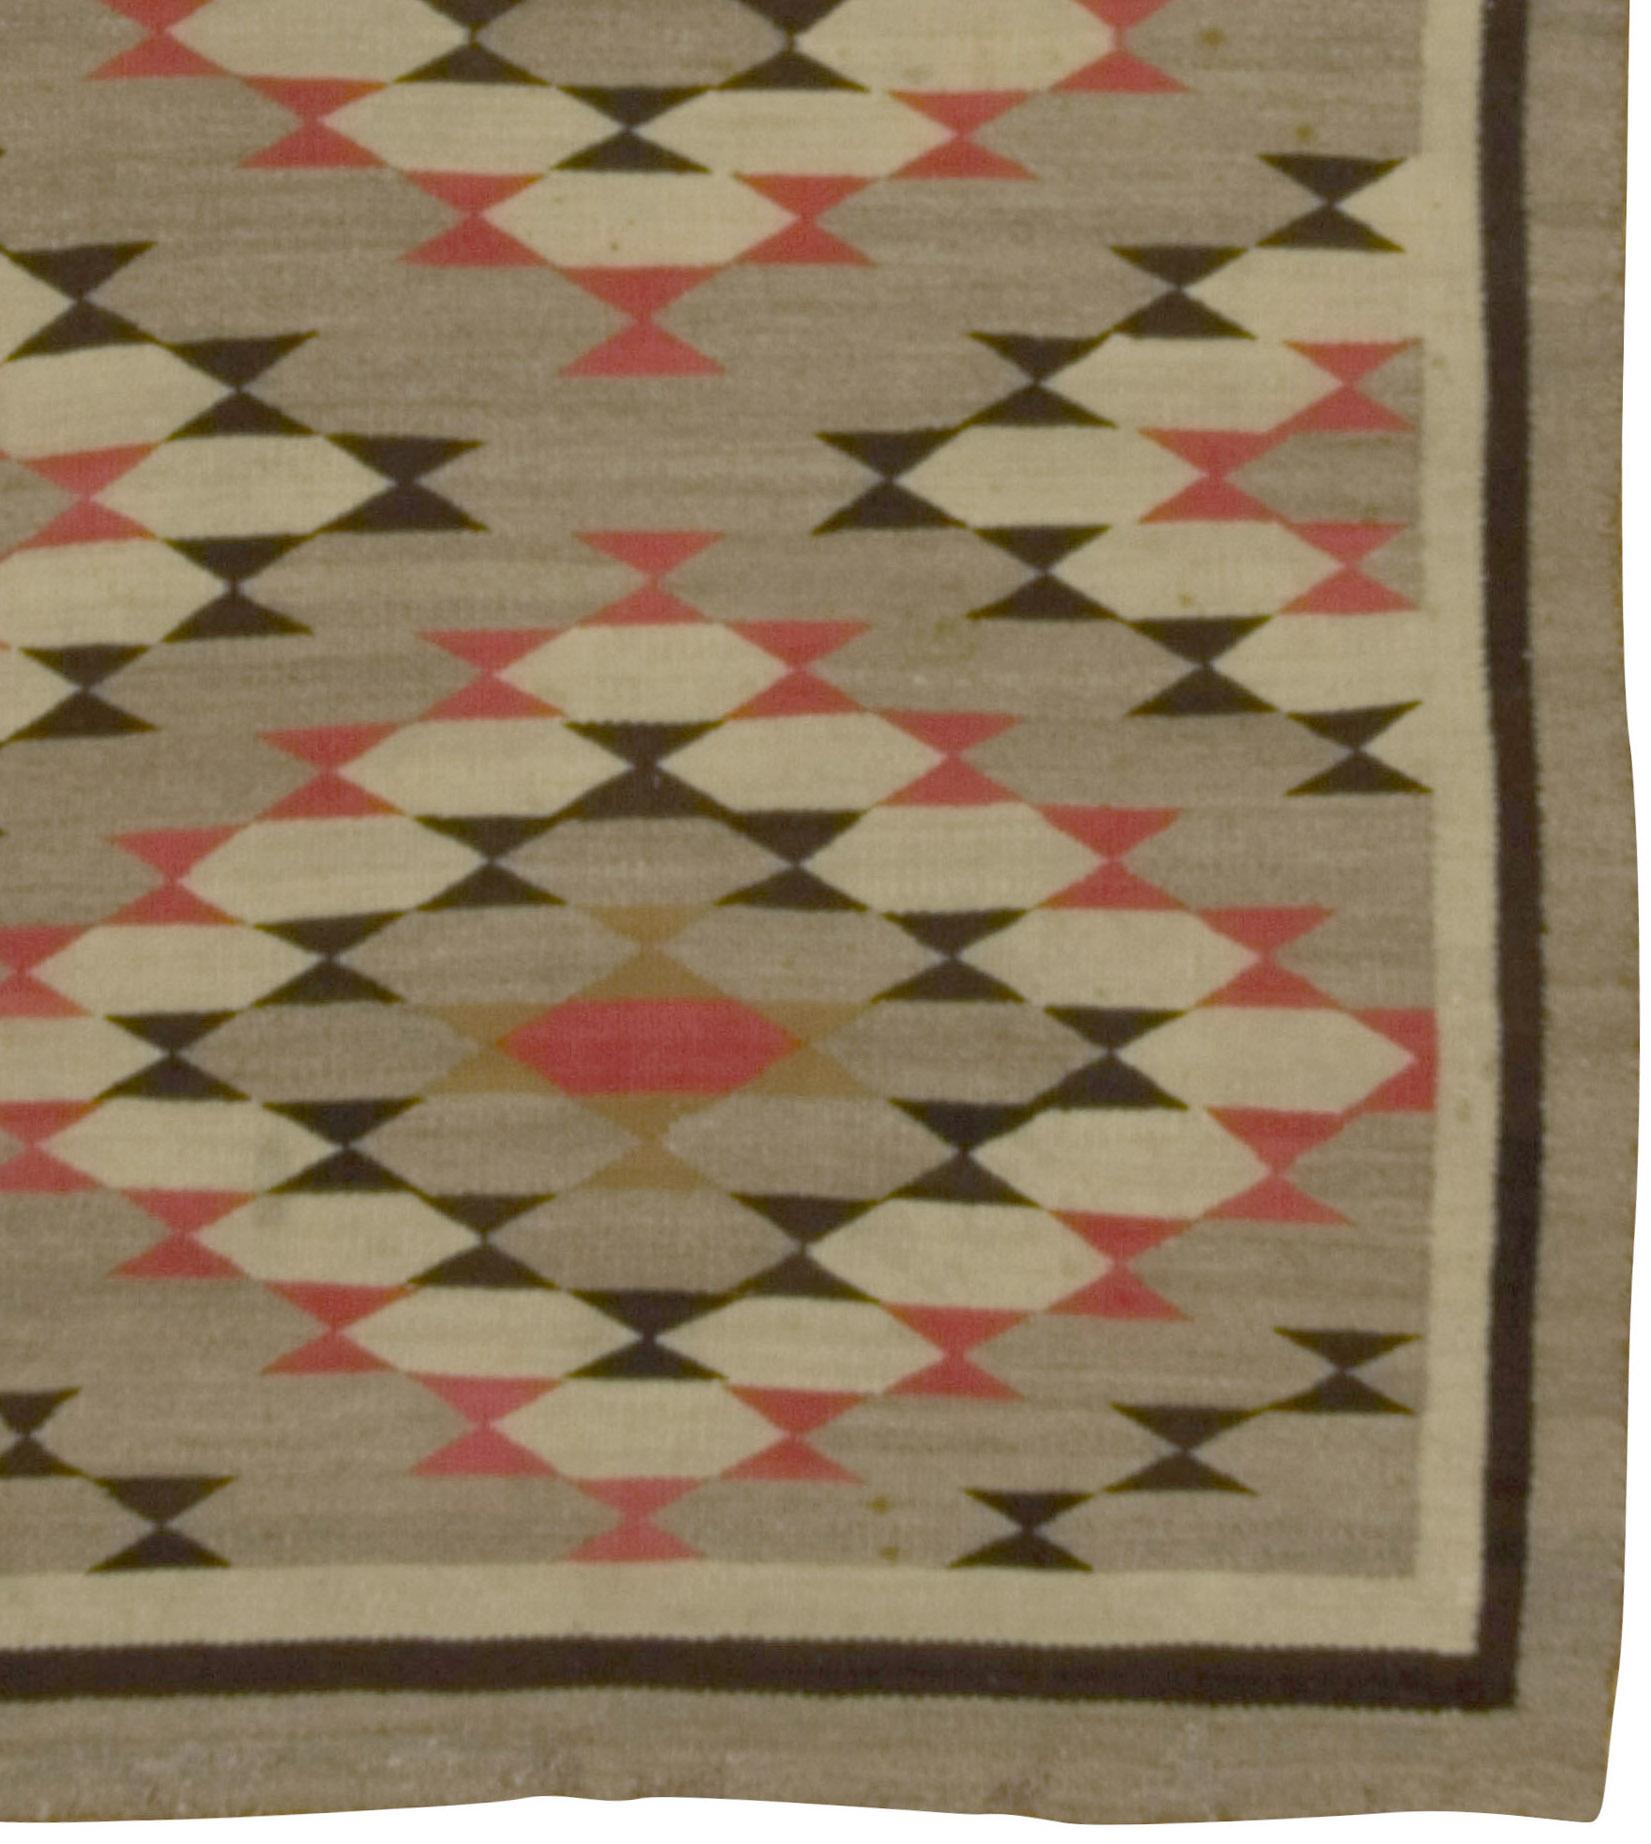 Vintage Navajo-Teppich Kilim, um 1940, 3'7 x 4'10. Obwohl nicht einem bestimmten Webort zuzuordnen und zu spät für einen Blickfang, betört dieses attraktive rustikale Gewebe mit dem Muster aus Sägezahnrauten auf dem natürlich abgewetzten grauen Feld